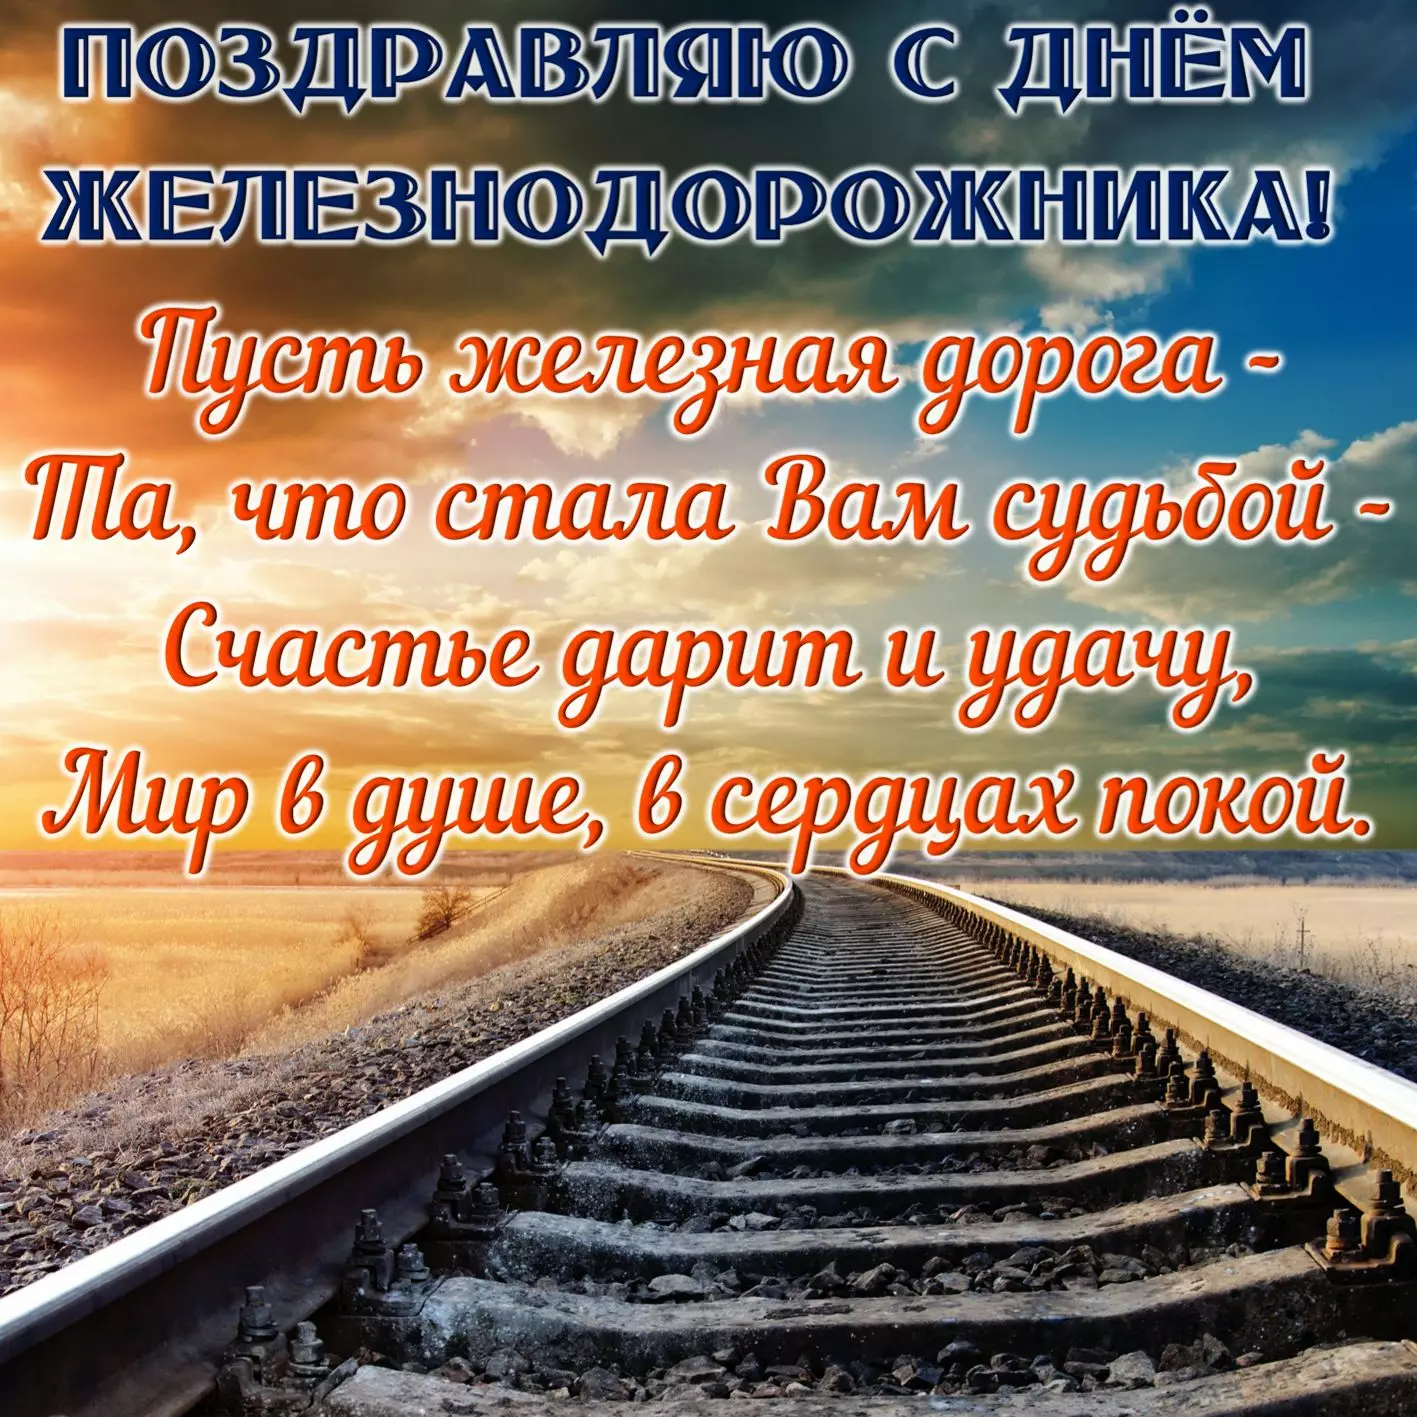 Пожелания в День железнодорожника Украины